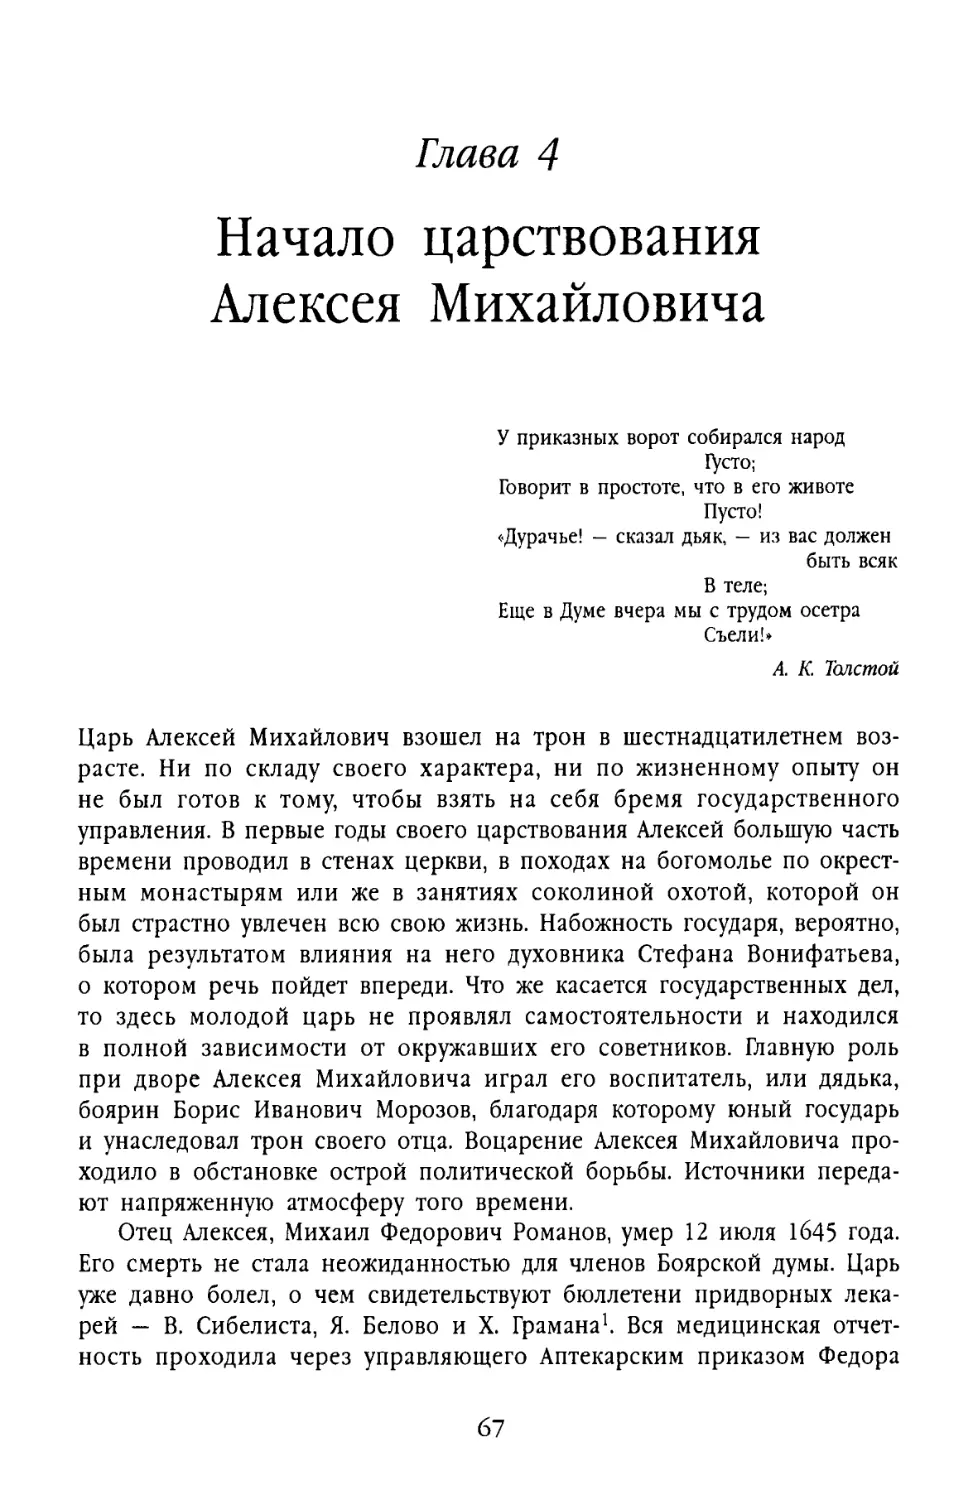 Глава 4. Начало царствования Алексея Михайловича